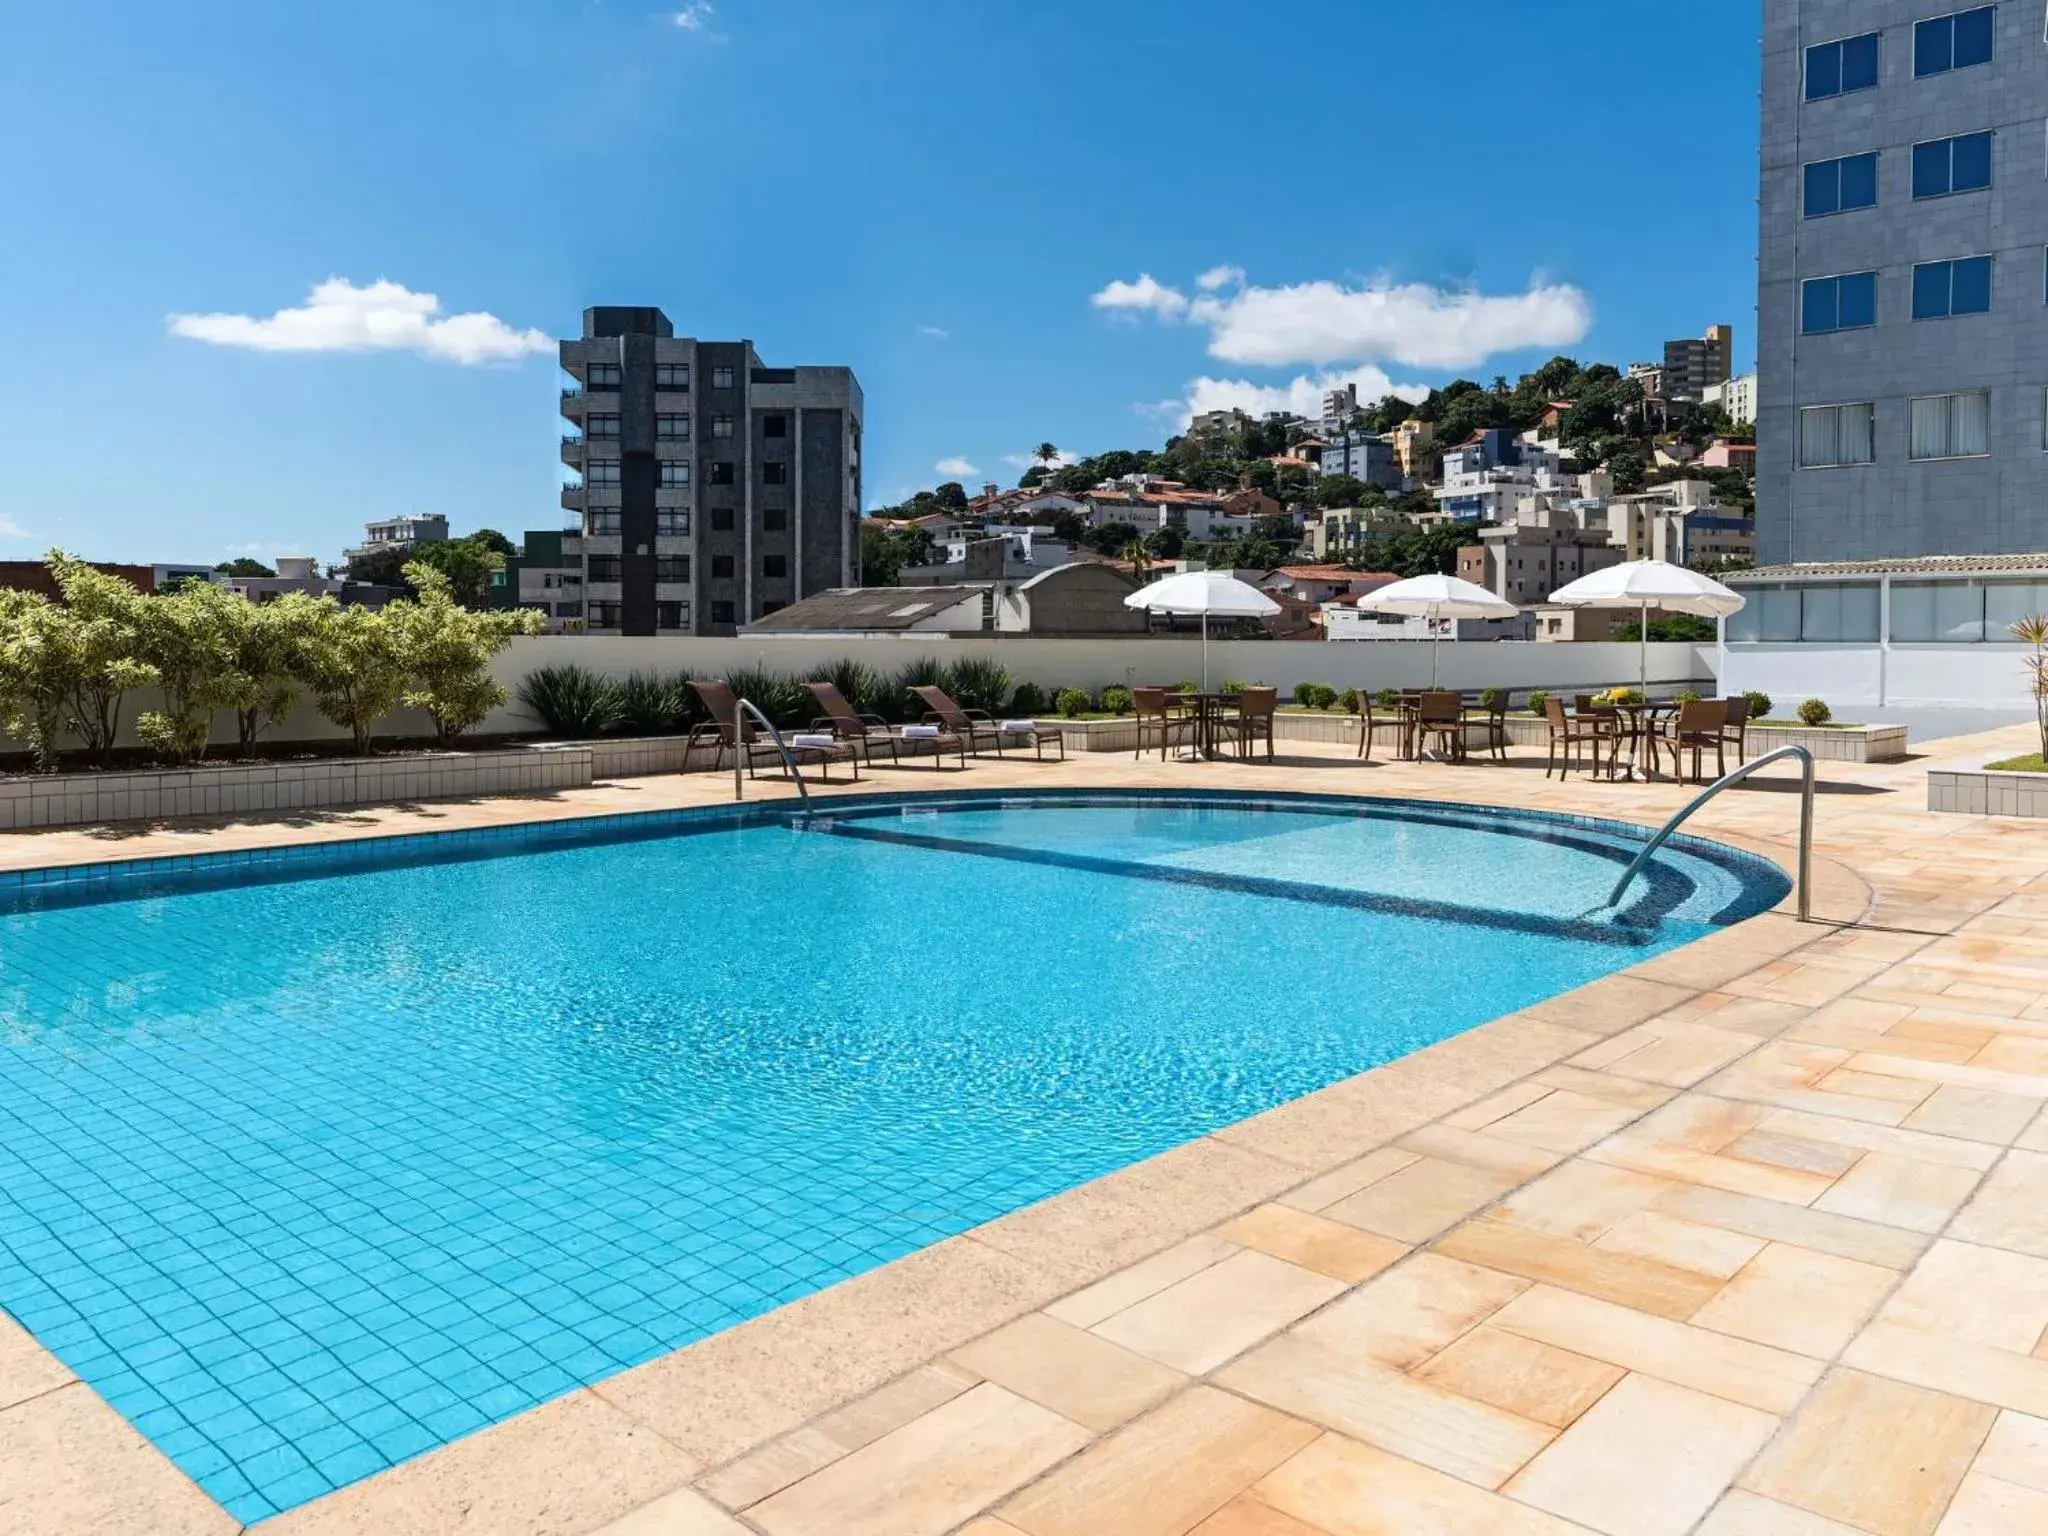 Swimming Pool in Mercure Belo Horizonte Savassi